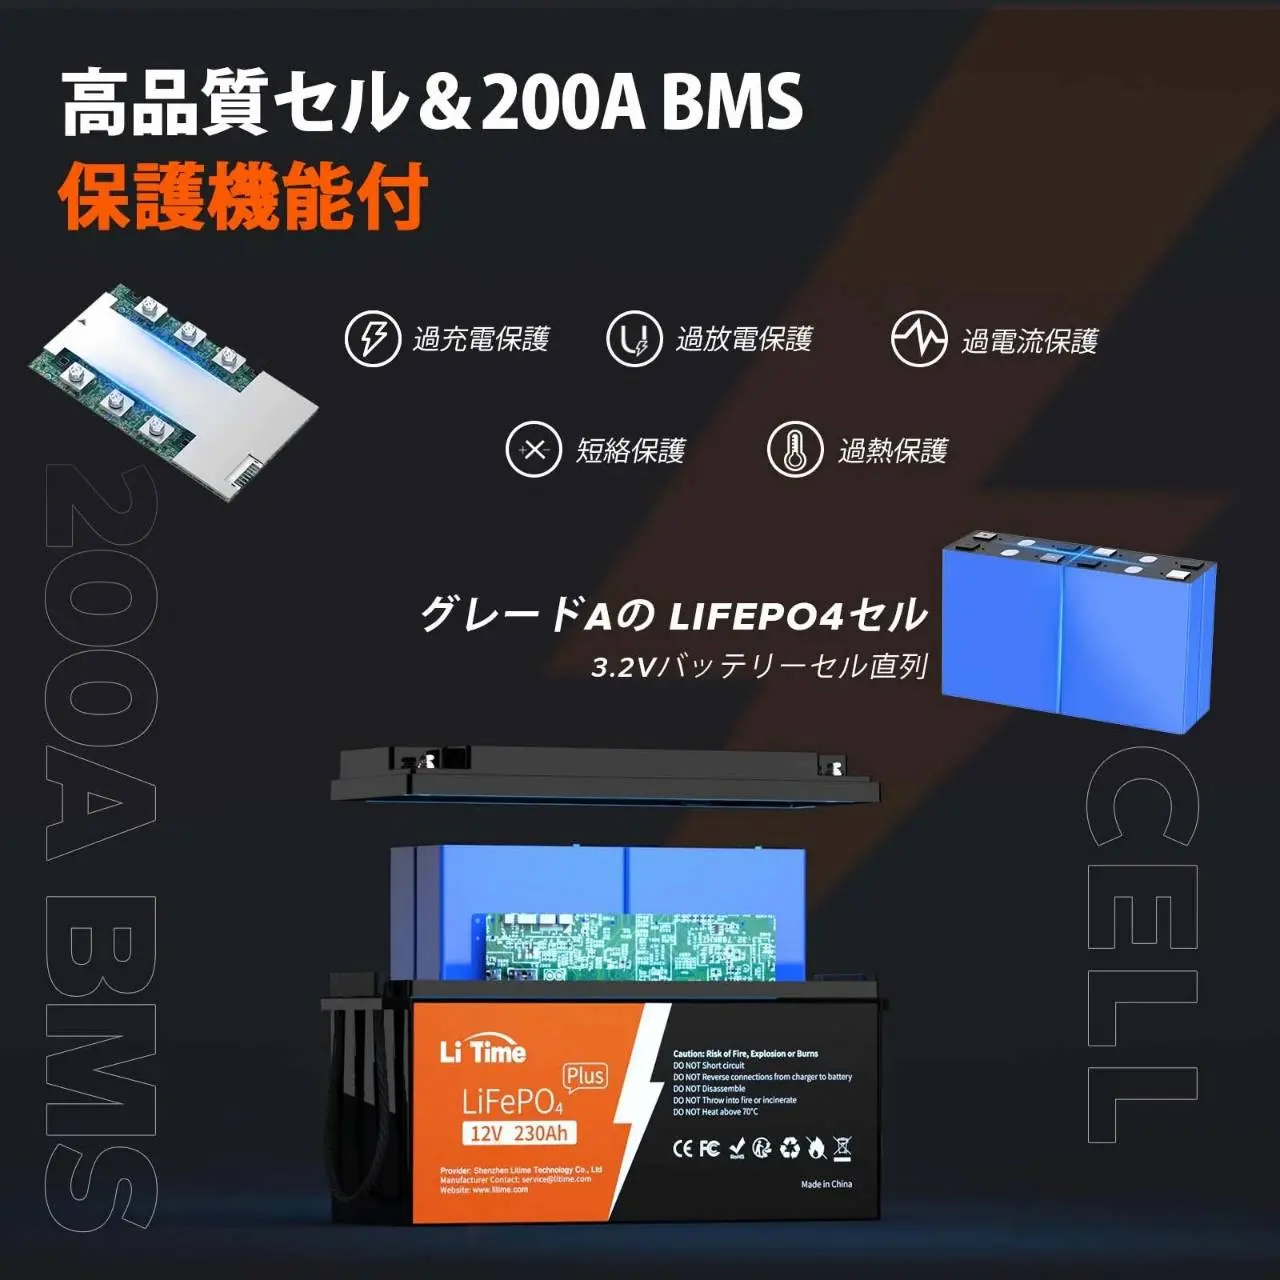 BMSボード200A Lifepo4セル配置